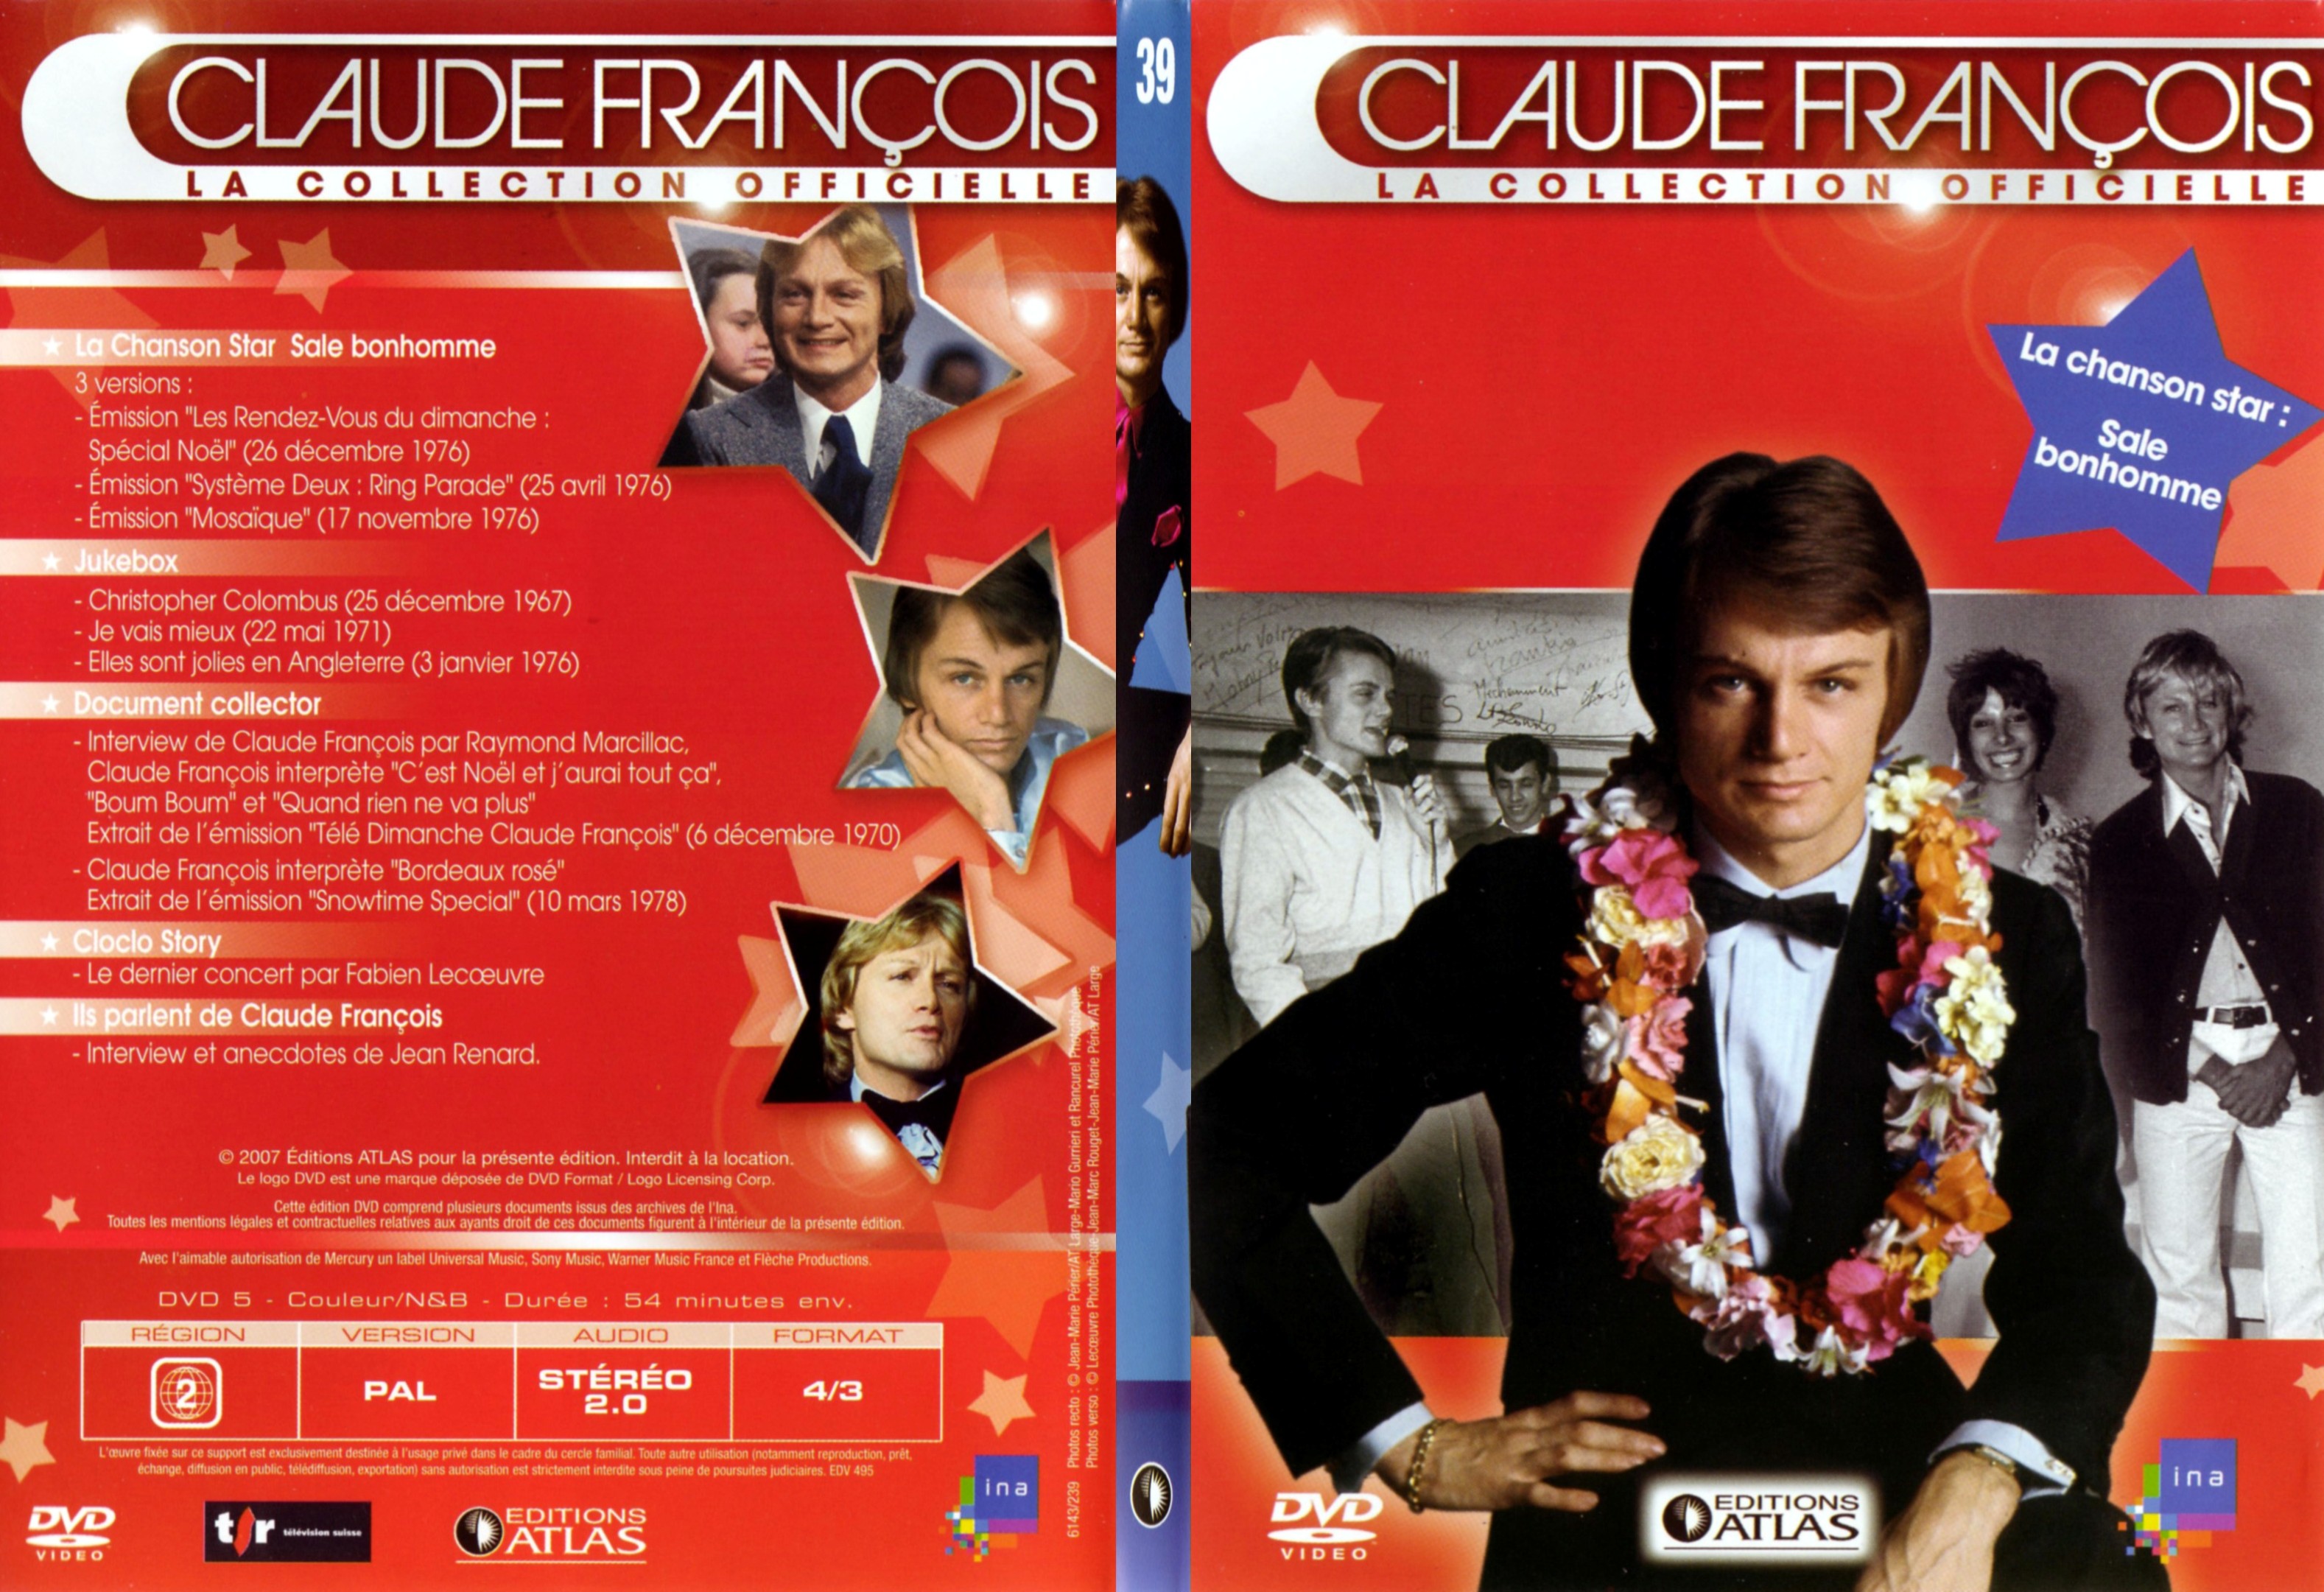 Jaquette DVD Claude francois le collection officielle vol 39 - SLIM